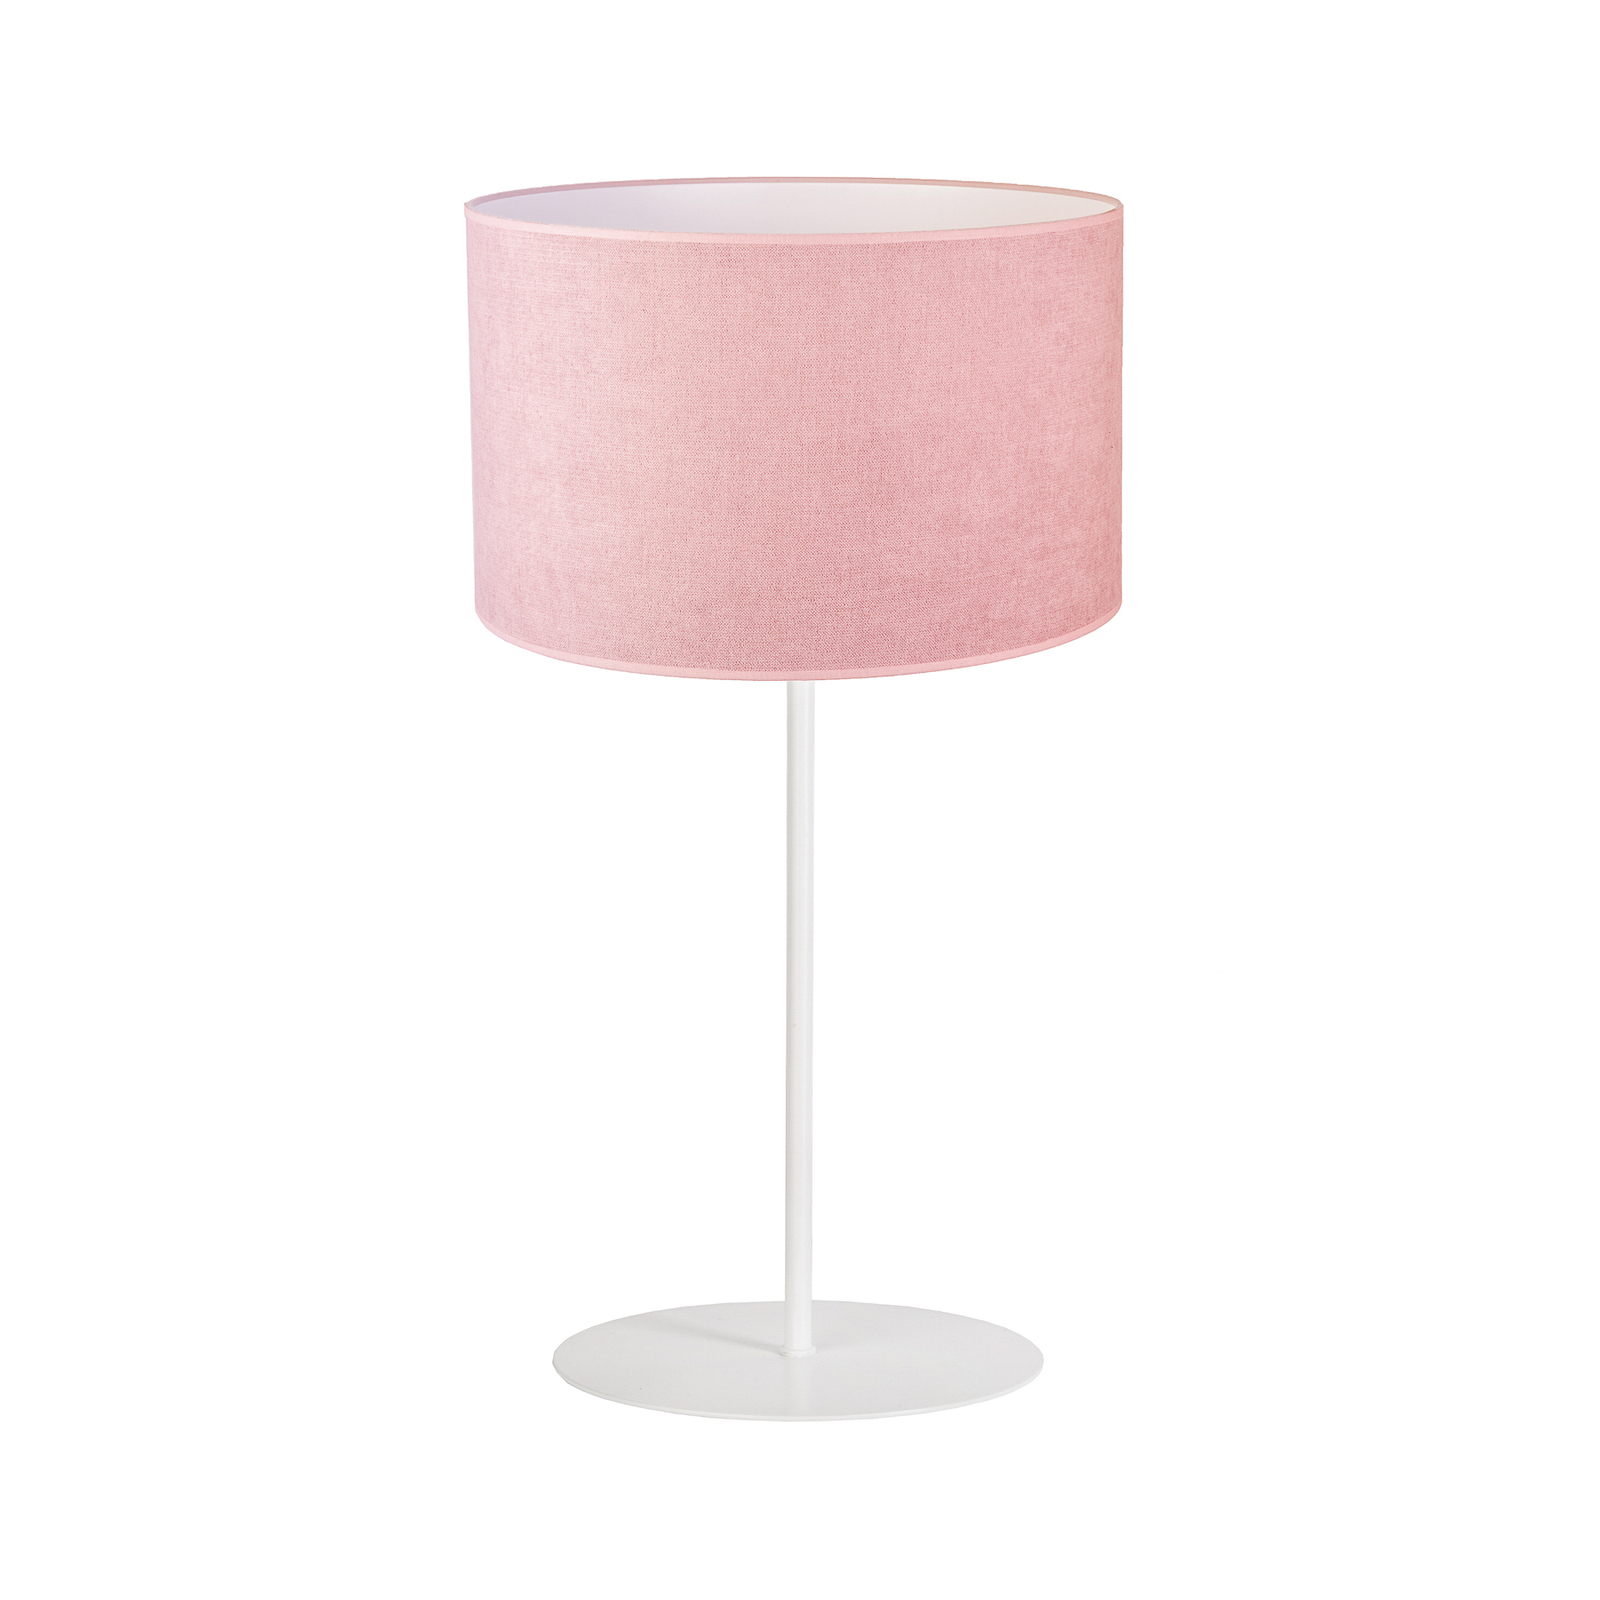 Tischlampe Pastell Roller Höhe 50cm rosa